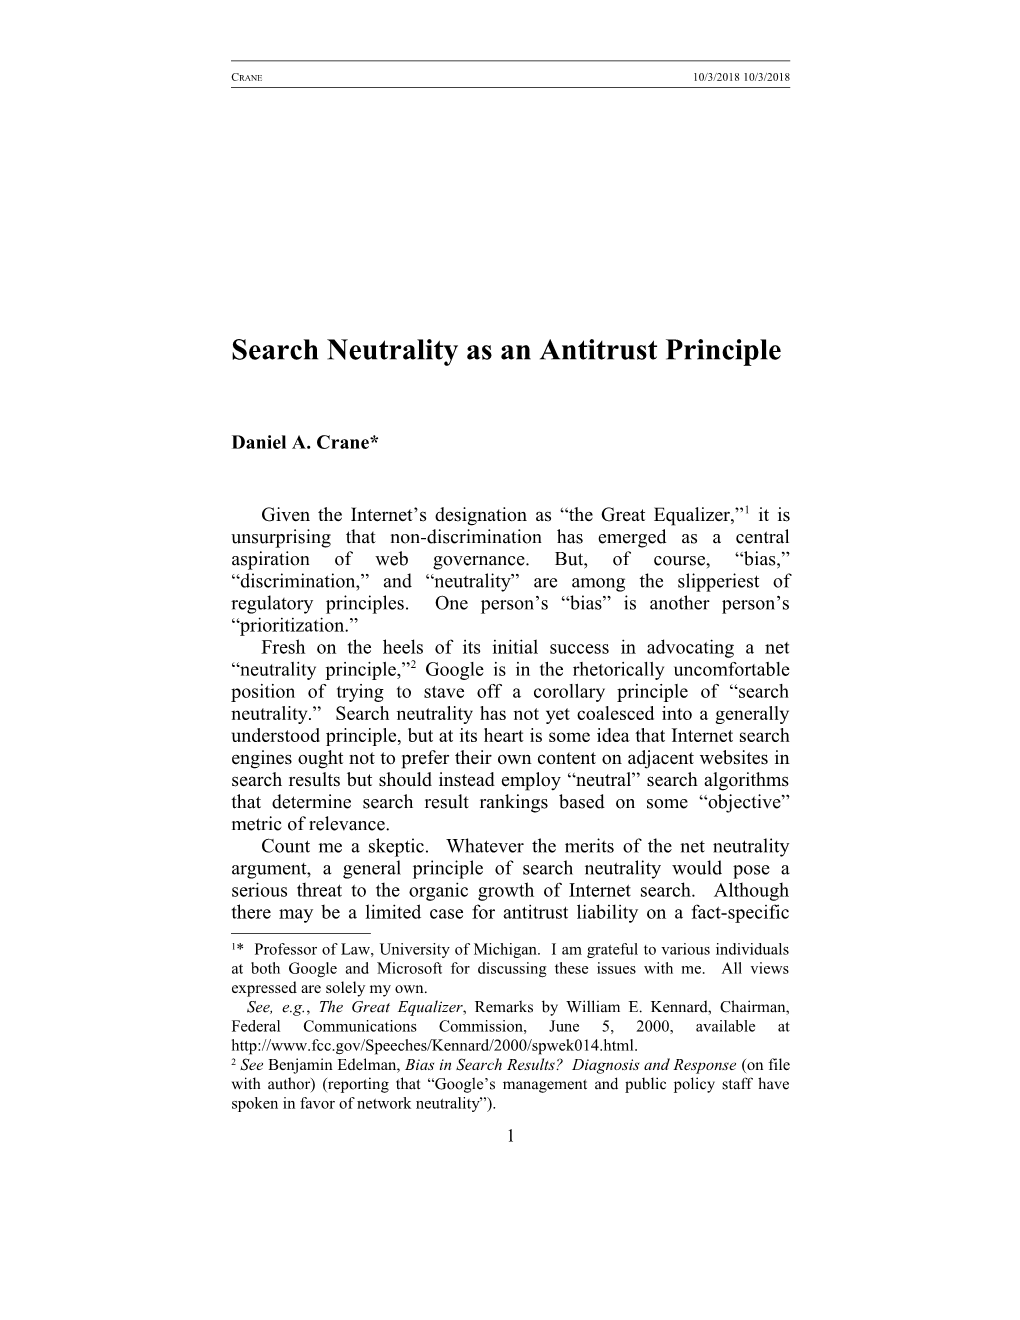 Prof. Daniel A. Crane: Search Neutrality As an Antitrust Principle